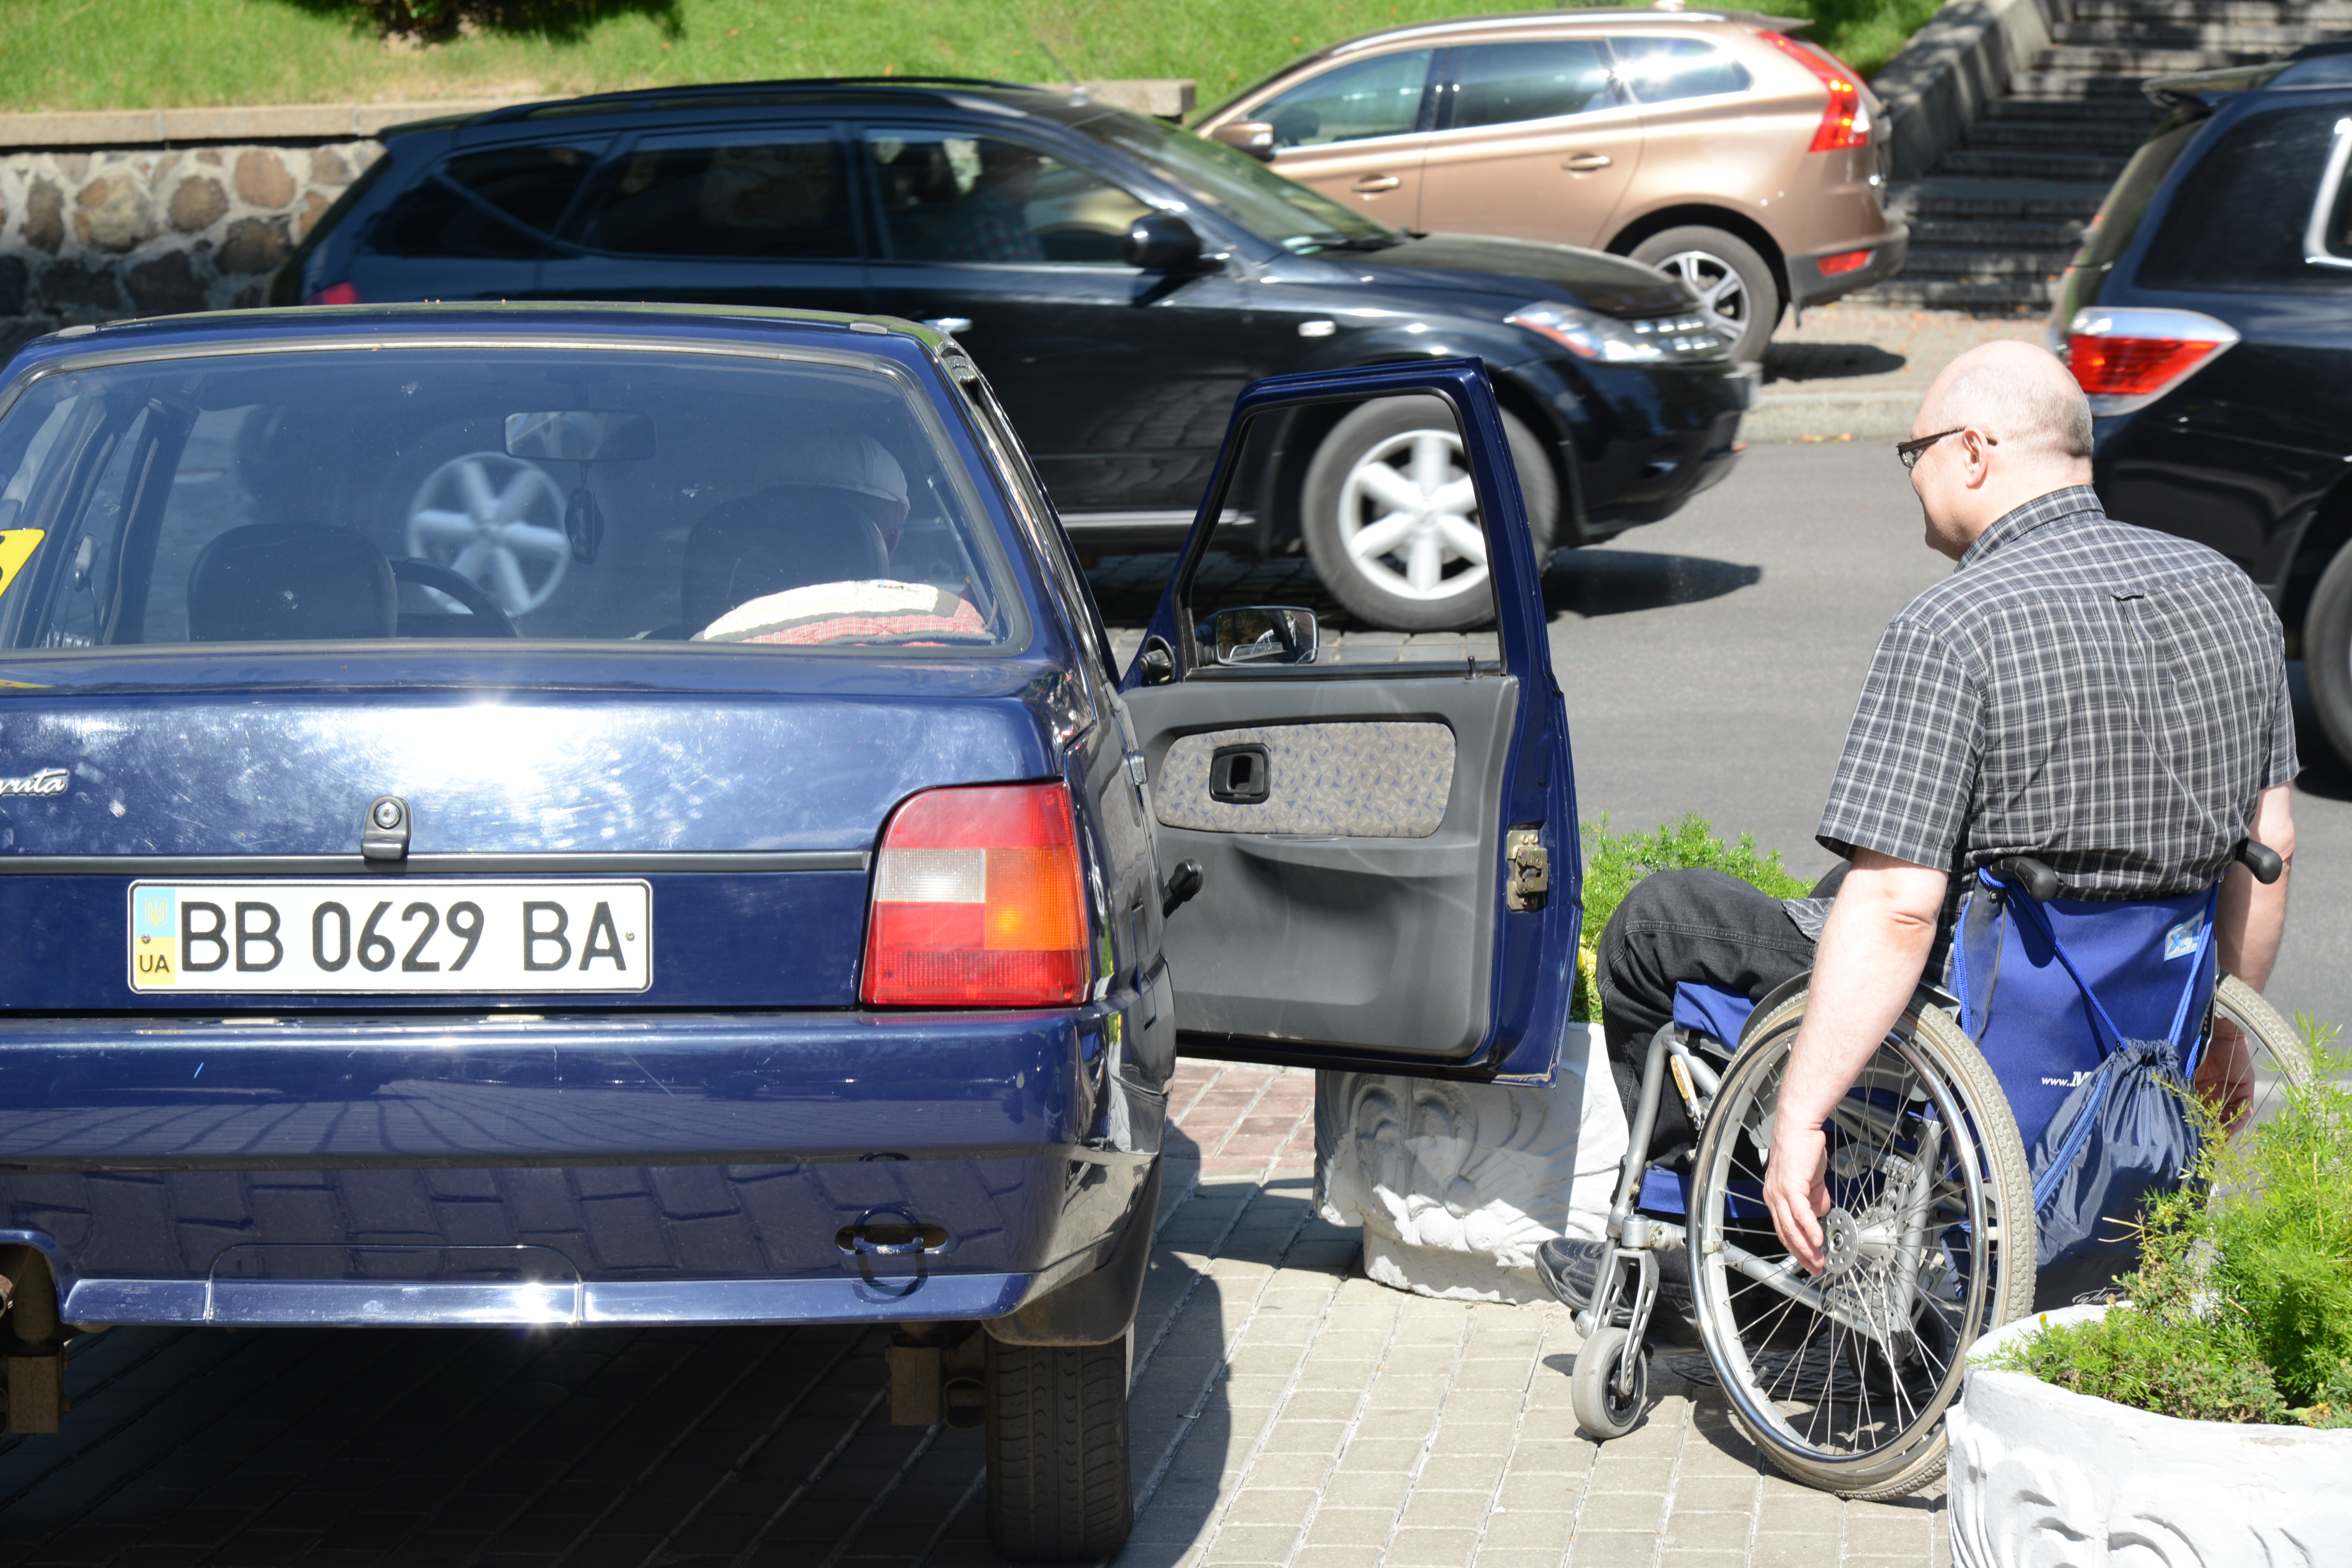 Нині інвалідові, який керує спецавтівкою, знайти місце для зручного та безпечного паркування дуже важко. Фото Володимира ЗAЇКИ